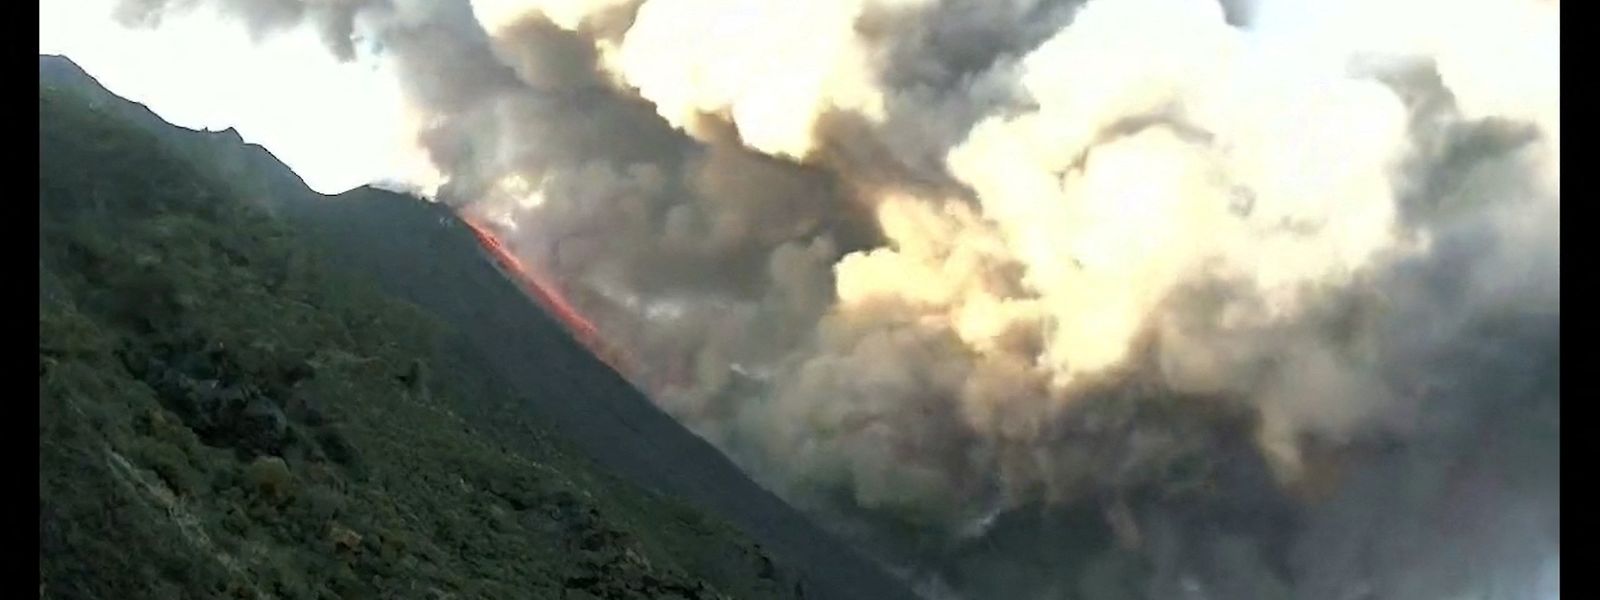 Ein Lavastrom fließt an der Flanke des Vulkans herunter.